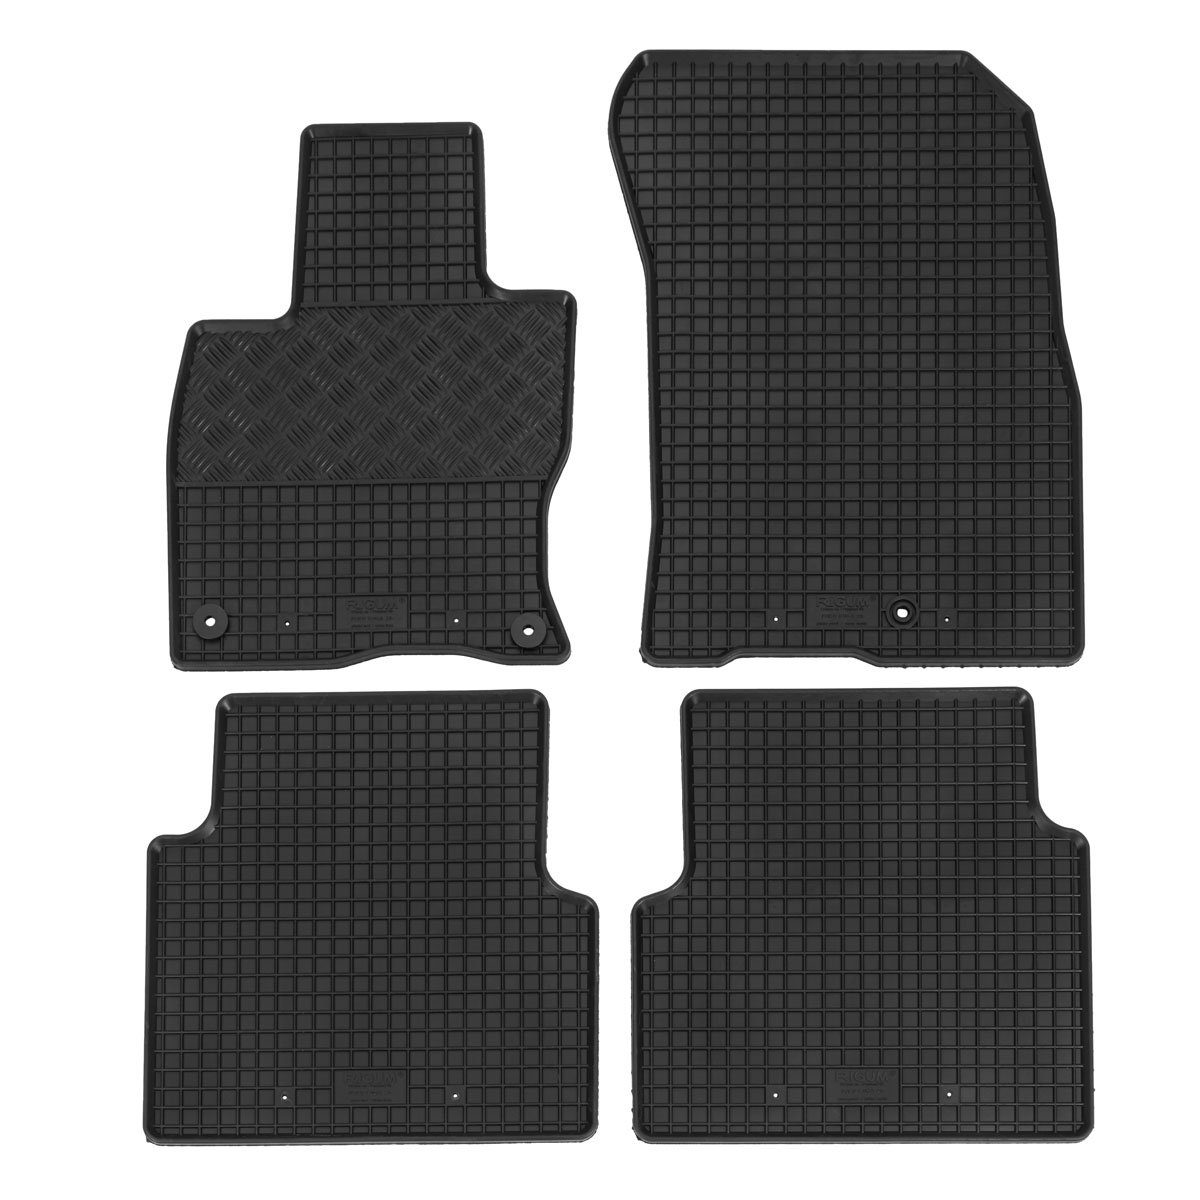 III Ford AZUGA Kuga Gummi-Fußmatten 2020, Kuga für ab SUV Auto-Fußmatten passend Ford für